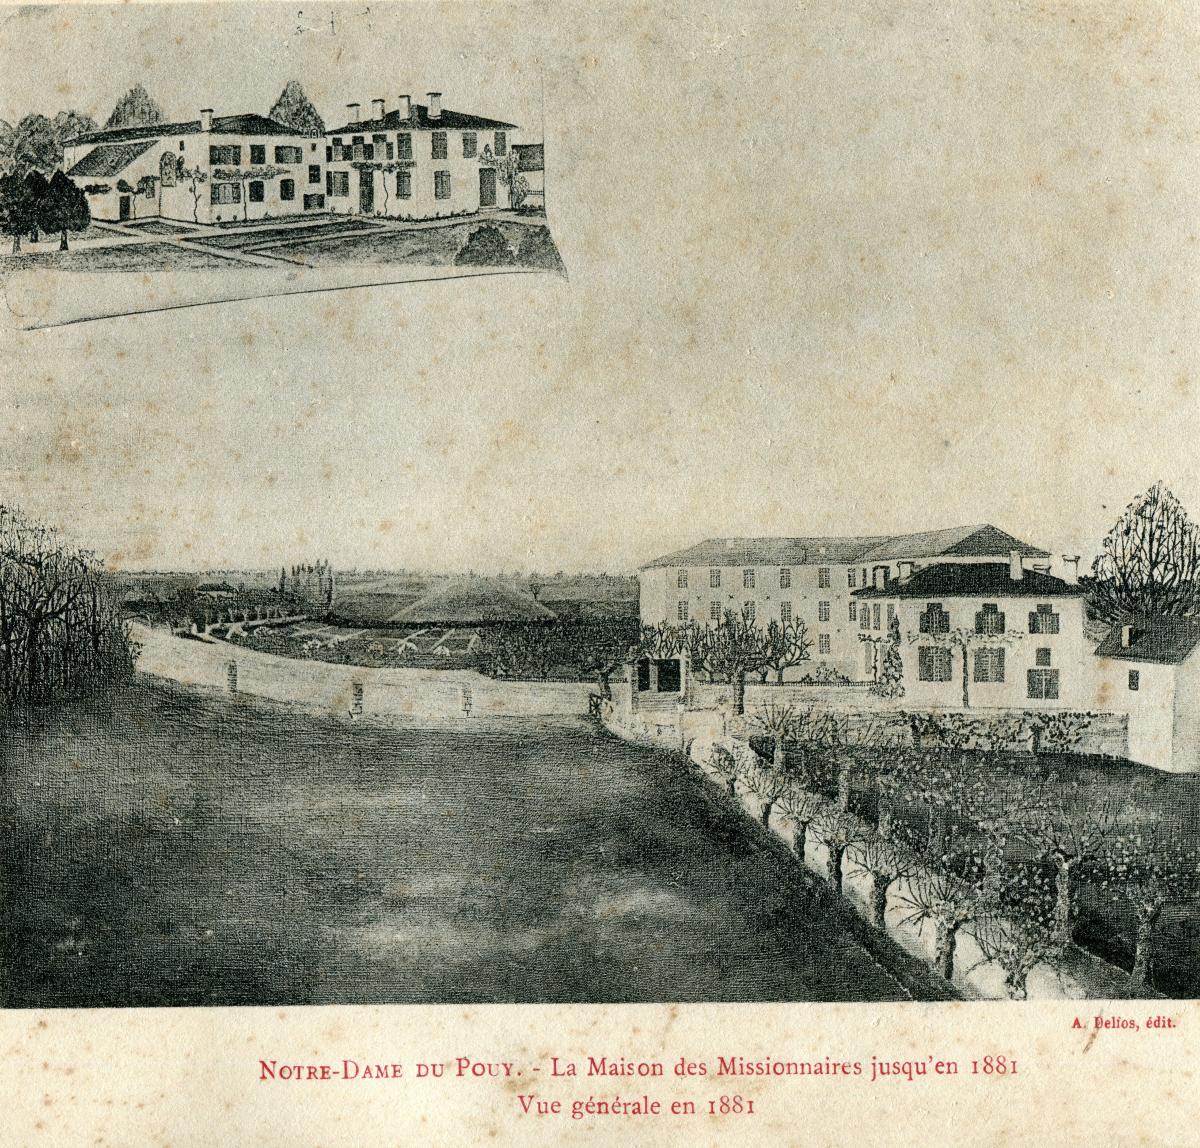 Le Pouy en 1881 après la première phase de travaux. En haut à gauche : la maison d'Amanda de Lupé avant la construction du séminaire. Carte postale, A. Delfos, édit.